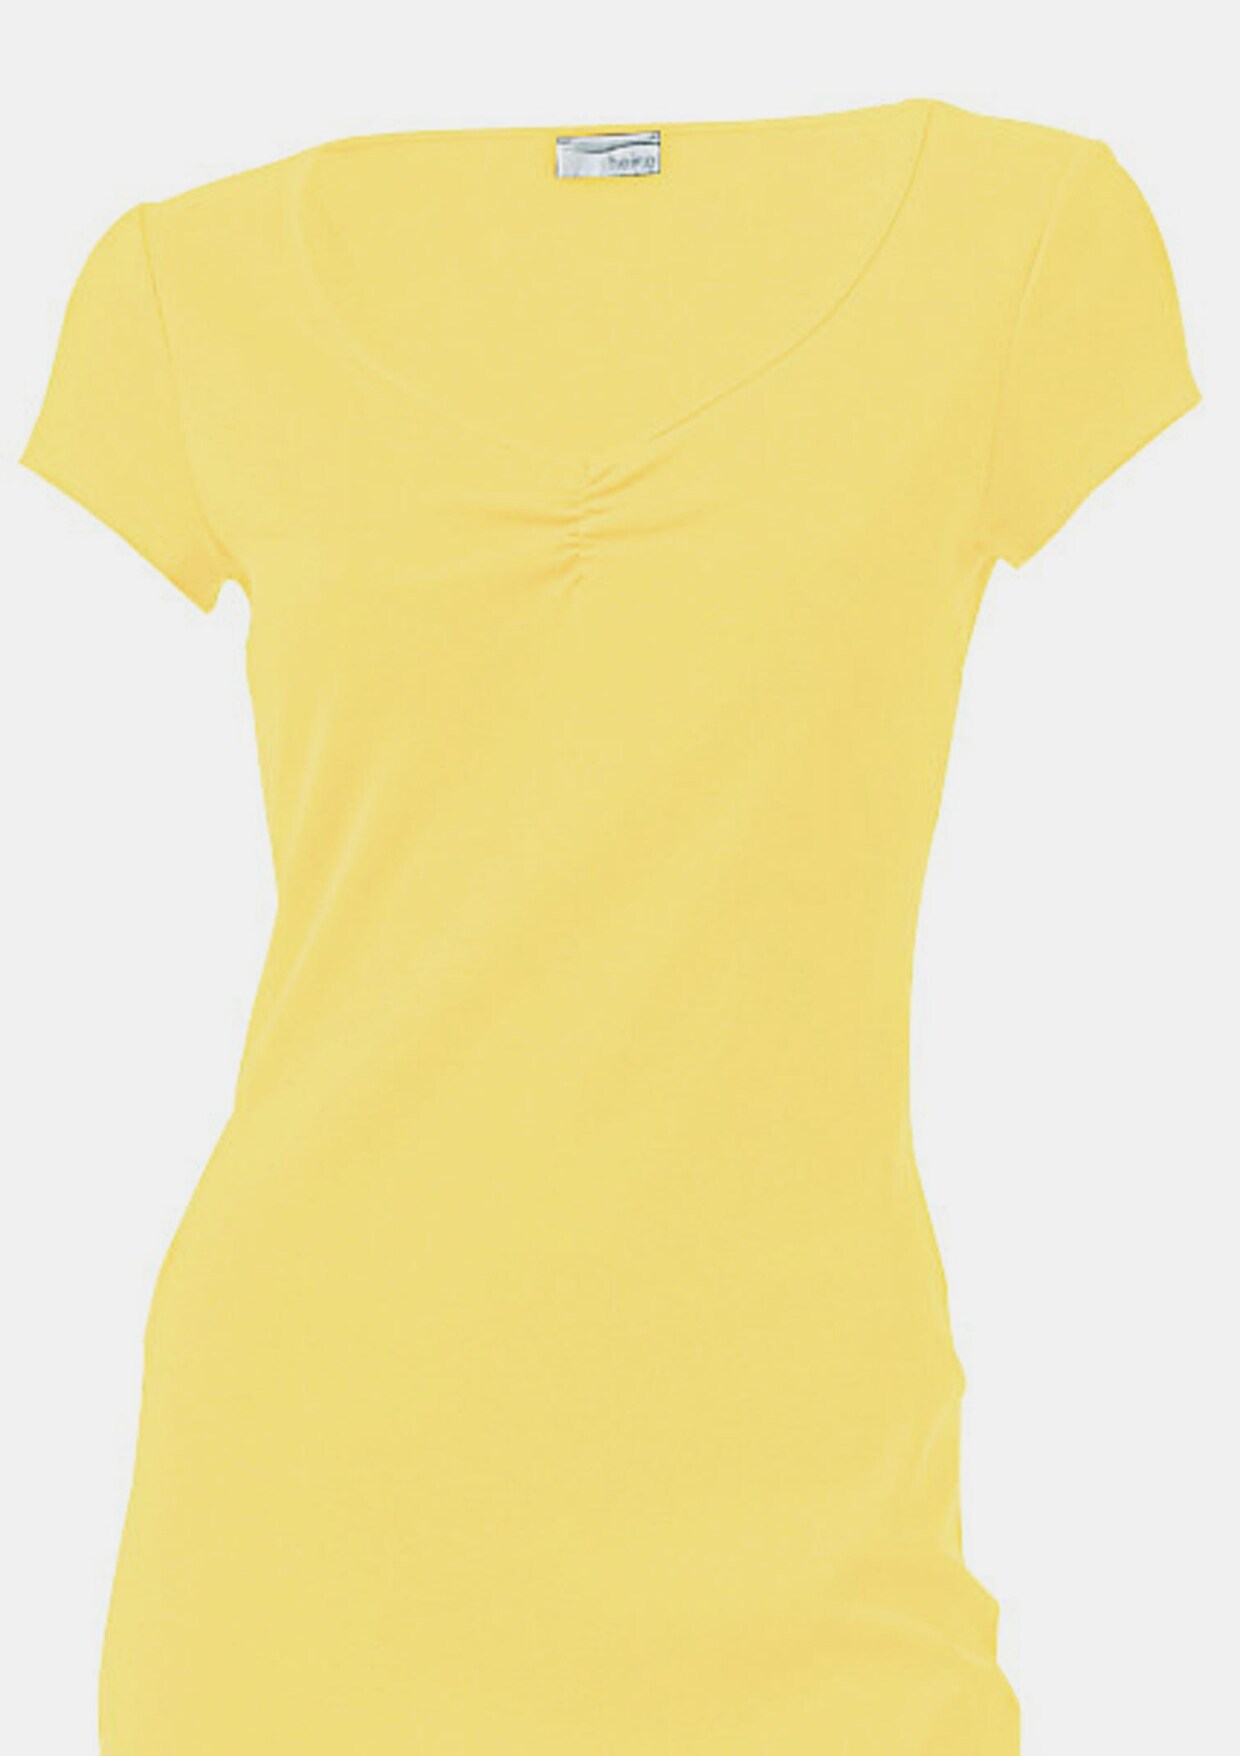 Ashley Brooke Shirtkleid - gelb